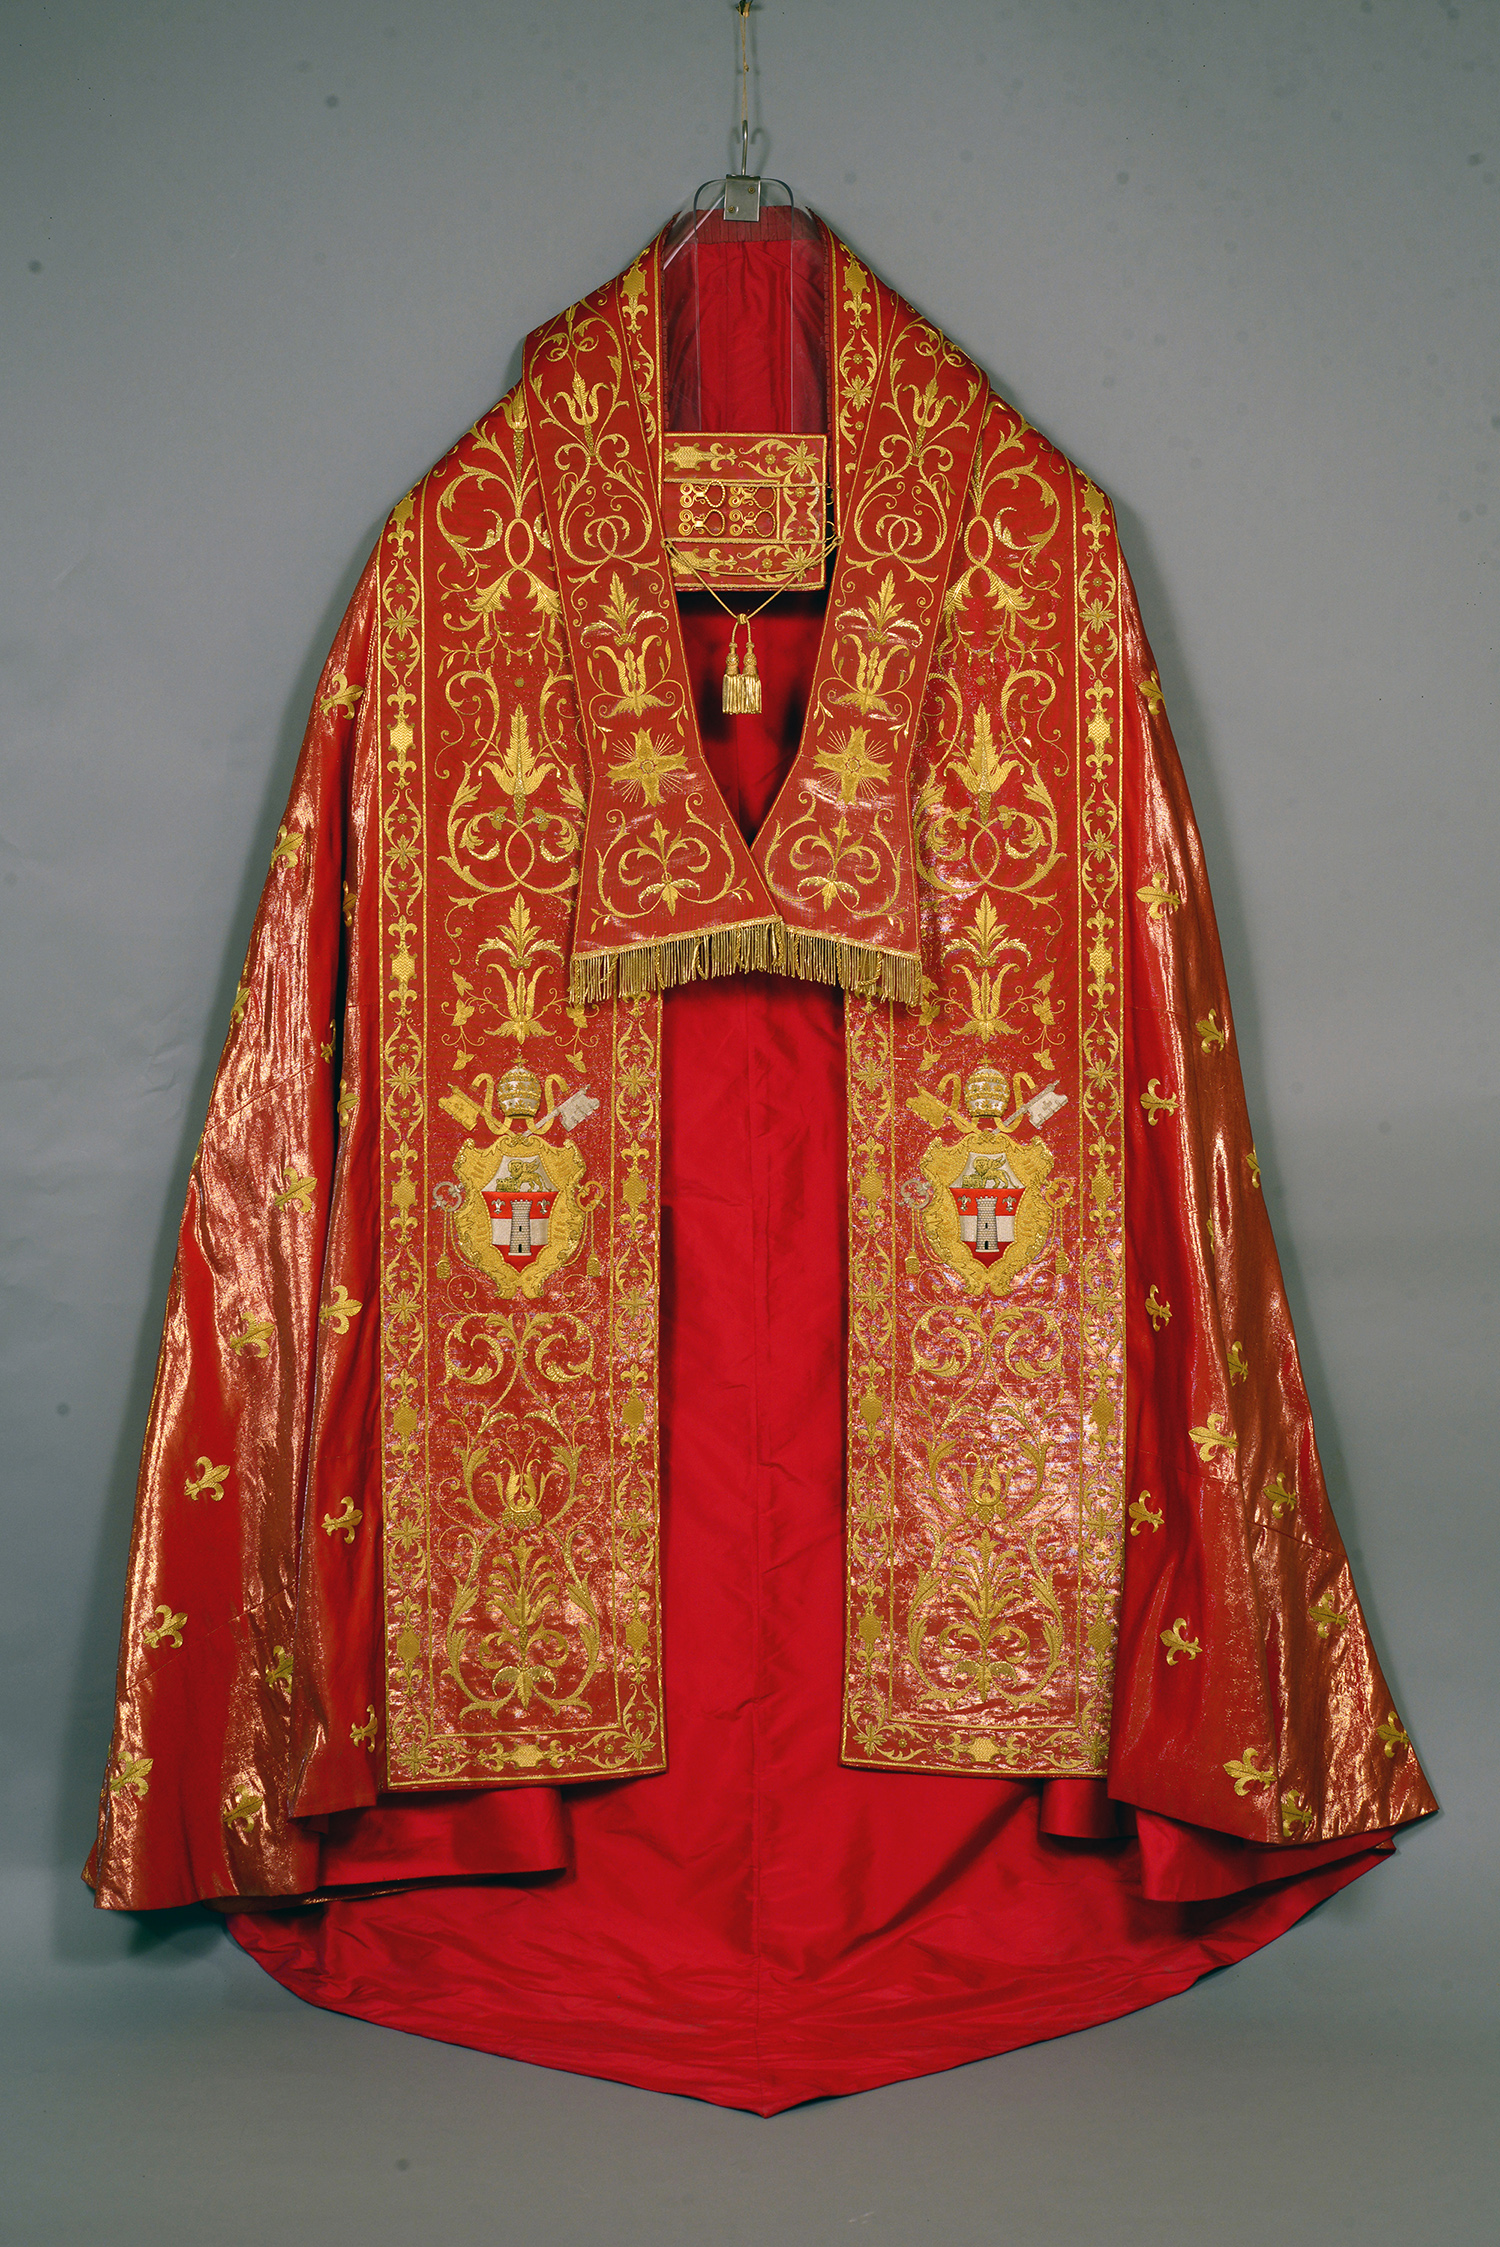 聖教宗若望二十三世（1958-1963在位）的紅色大圓氅與領帶